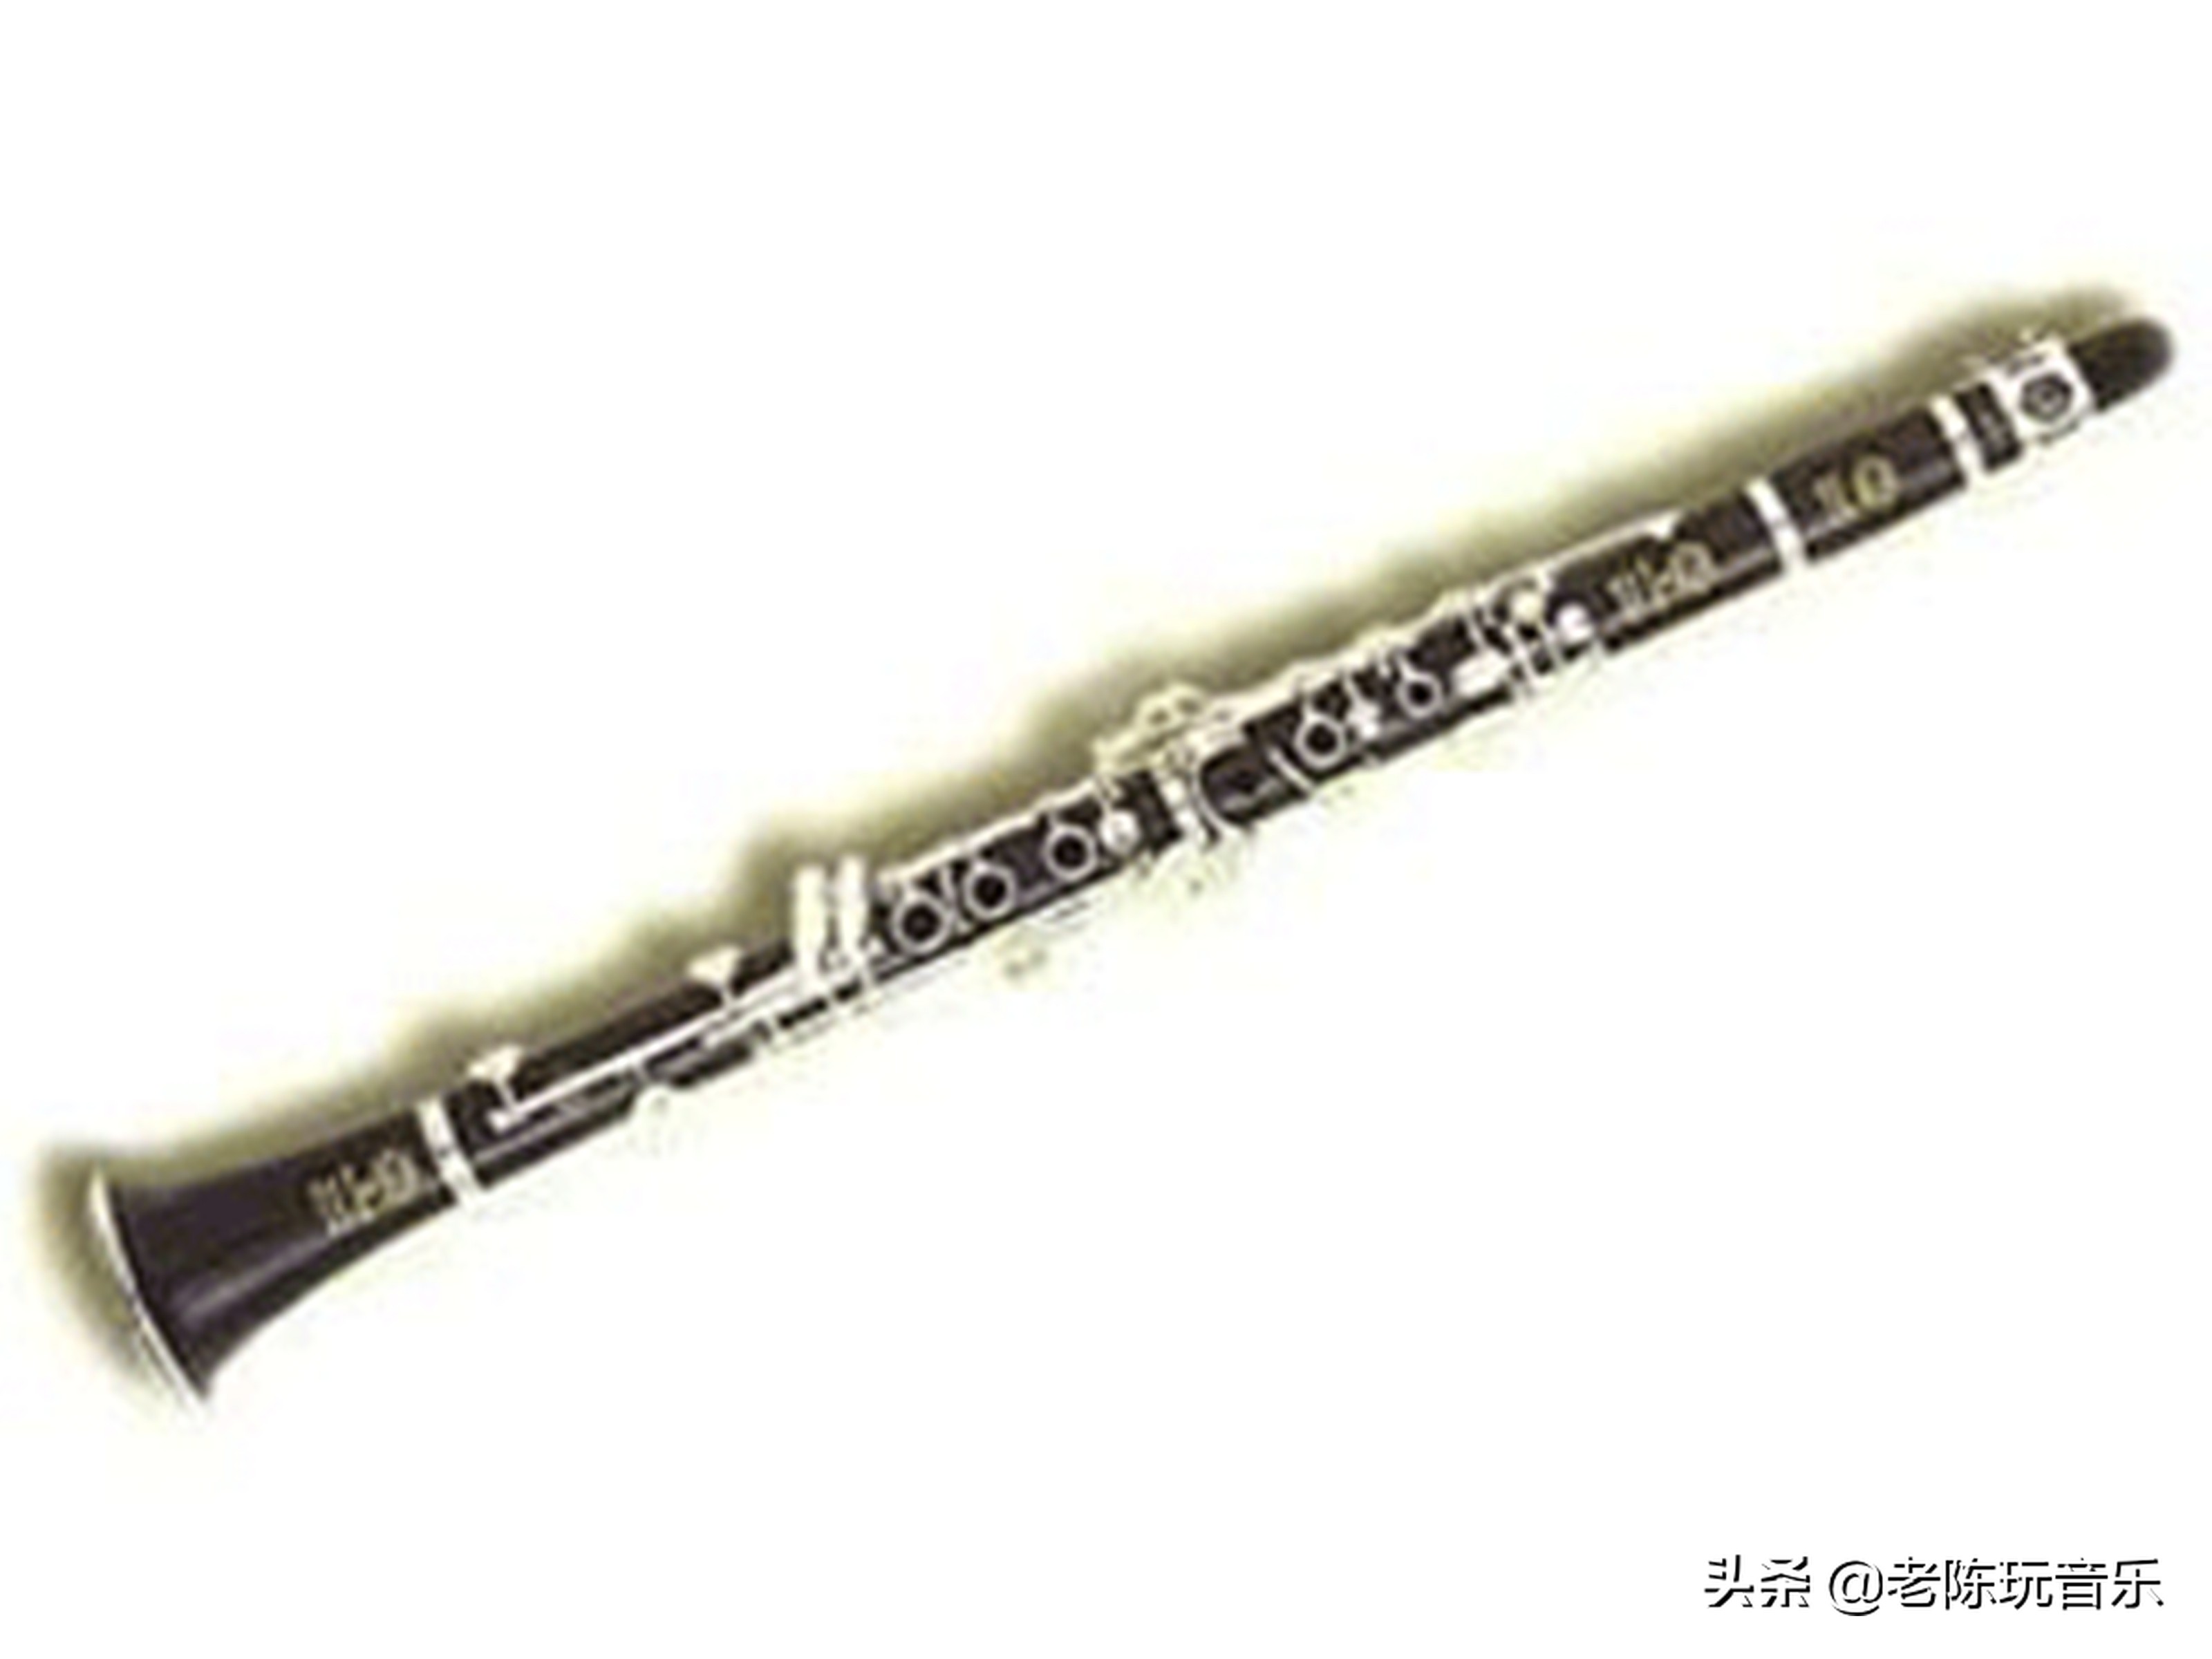 首页 投稿 黑管,又叫单簧管或克拉管,在木管乐器中占有很重要的位置